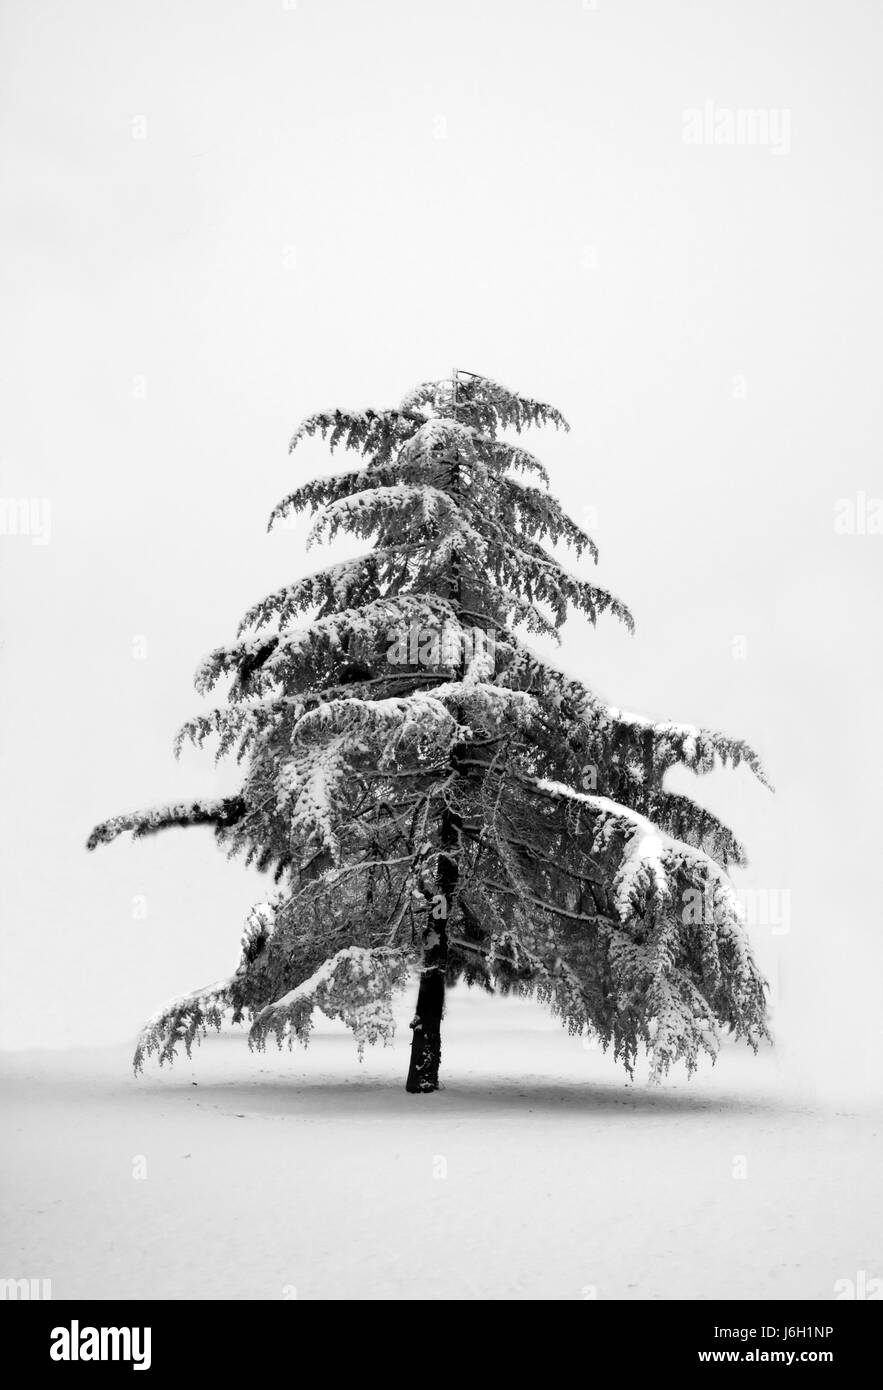 Nato ad albero di pino d'inverno la neve coke materiale cocaina farmaco anestetico coinvolgente Foto Stock